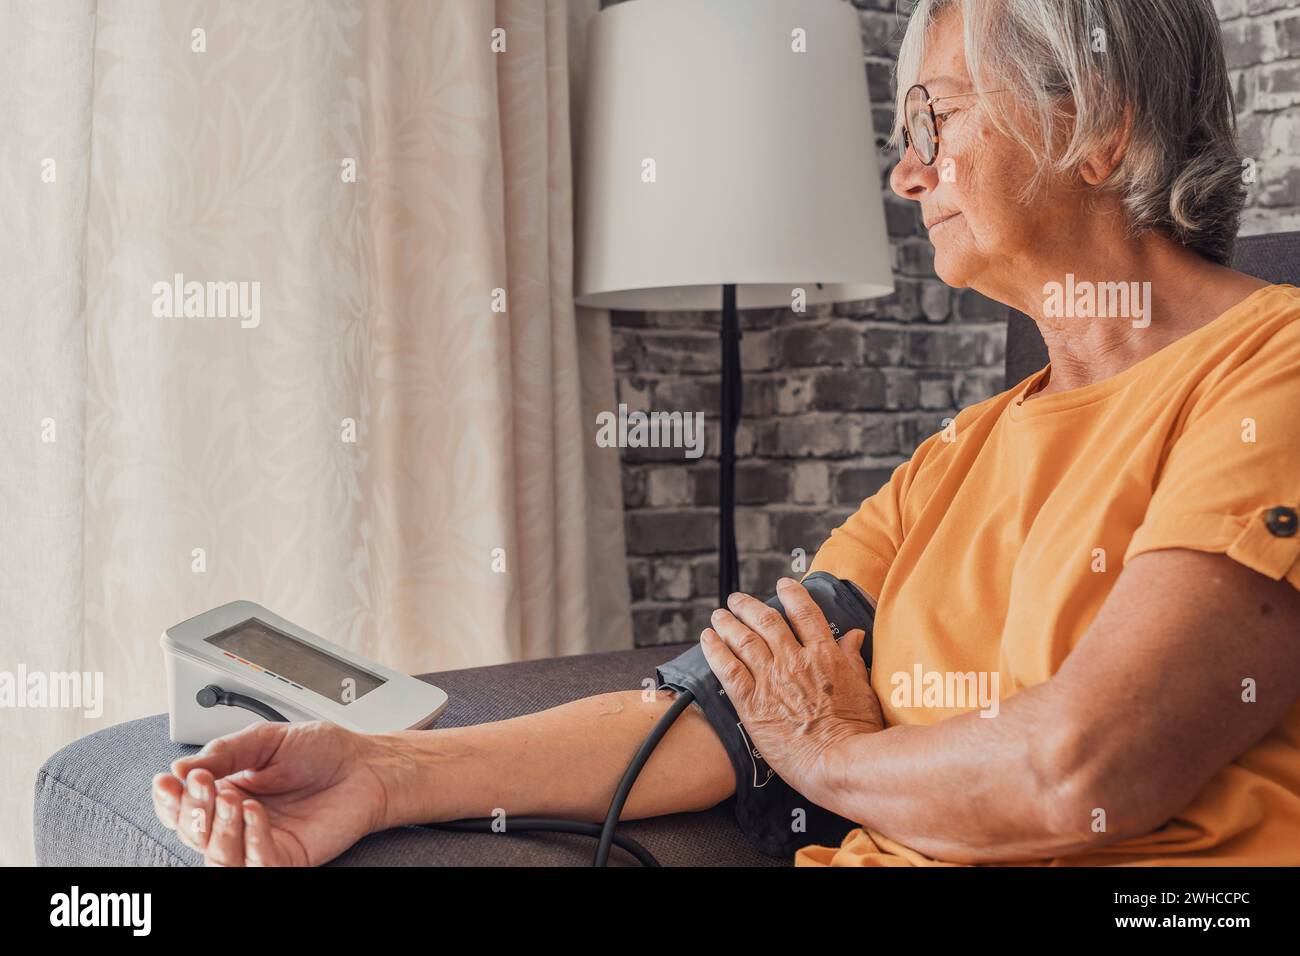 Ältere Frau messen hohen niedrigen Blutdruck Test Halten mit medizinischen digitalen elektronischen Meter sitzen auf Sofa zu Hause, Herzkrankheit Atherosklerose Prävention, Hypotonie Hypertonie Konzept Stockfoto